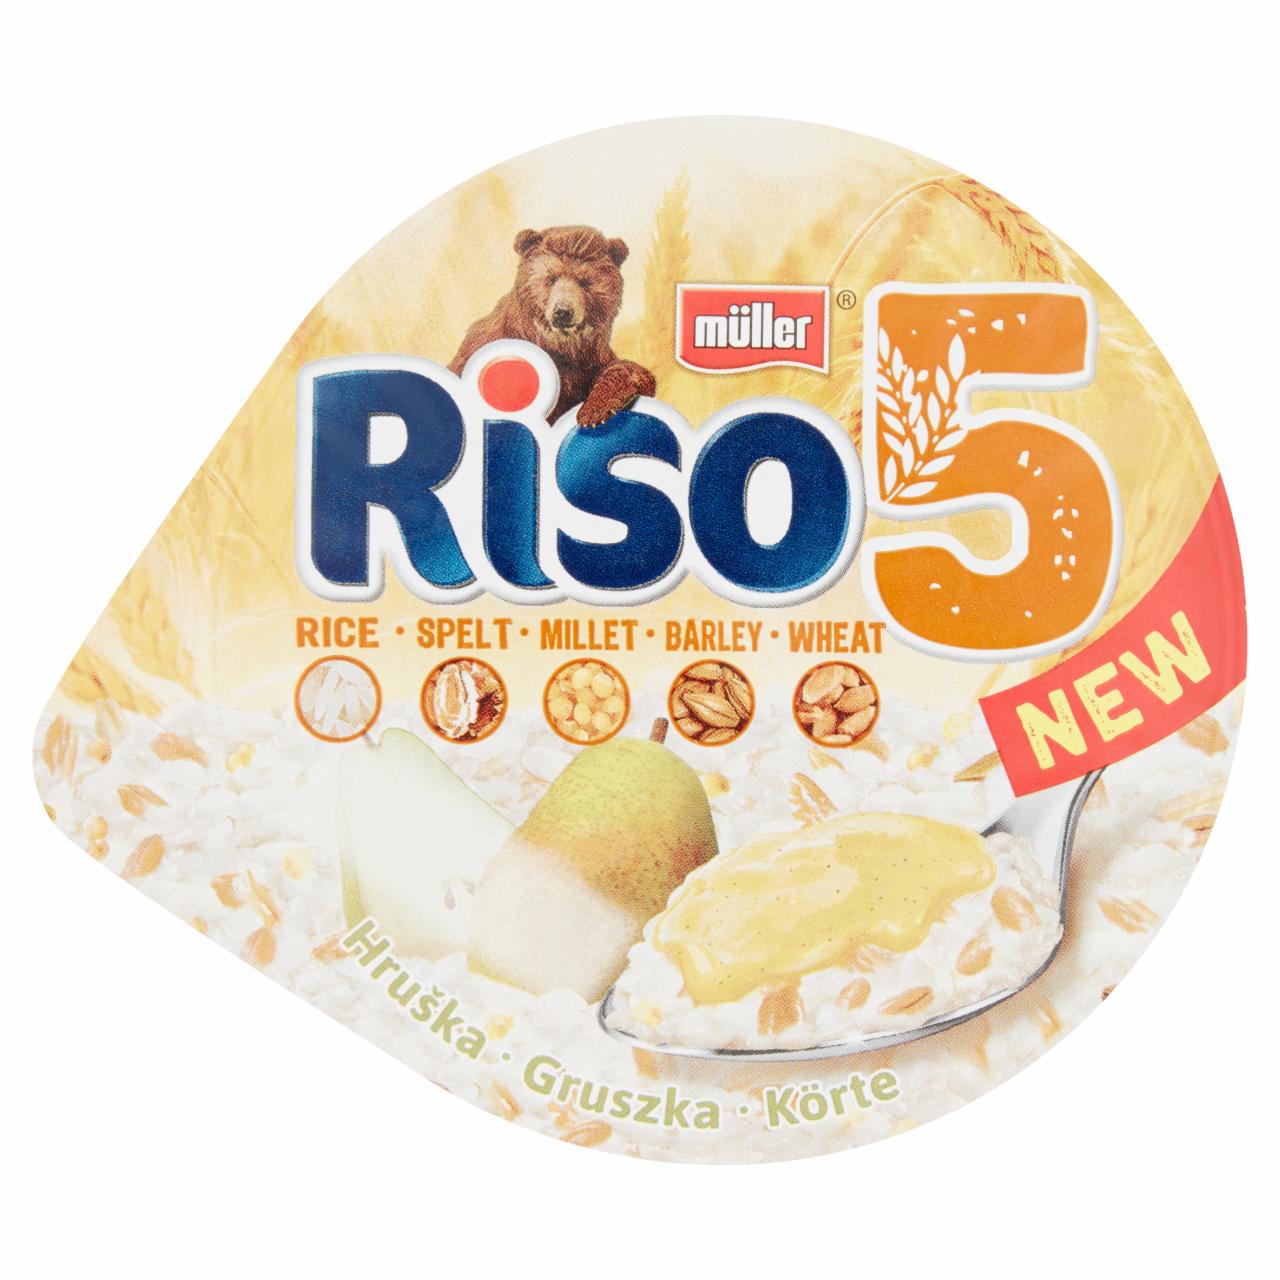 Zdjęcia - Müller Riso 5 ziaren Gruszka Mleczny deser ryżowy 175 g